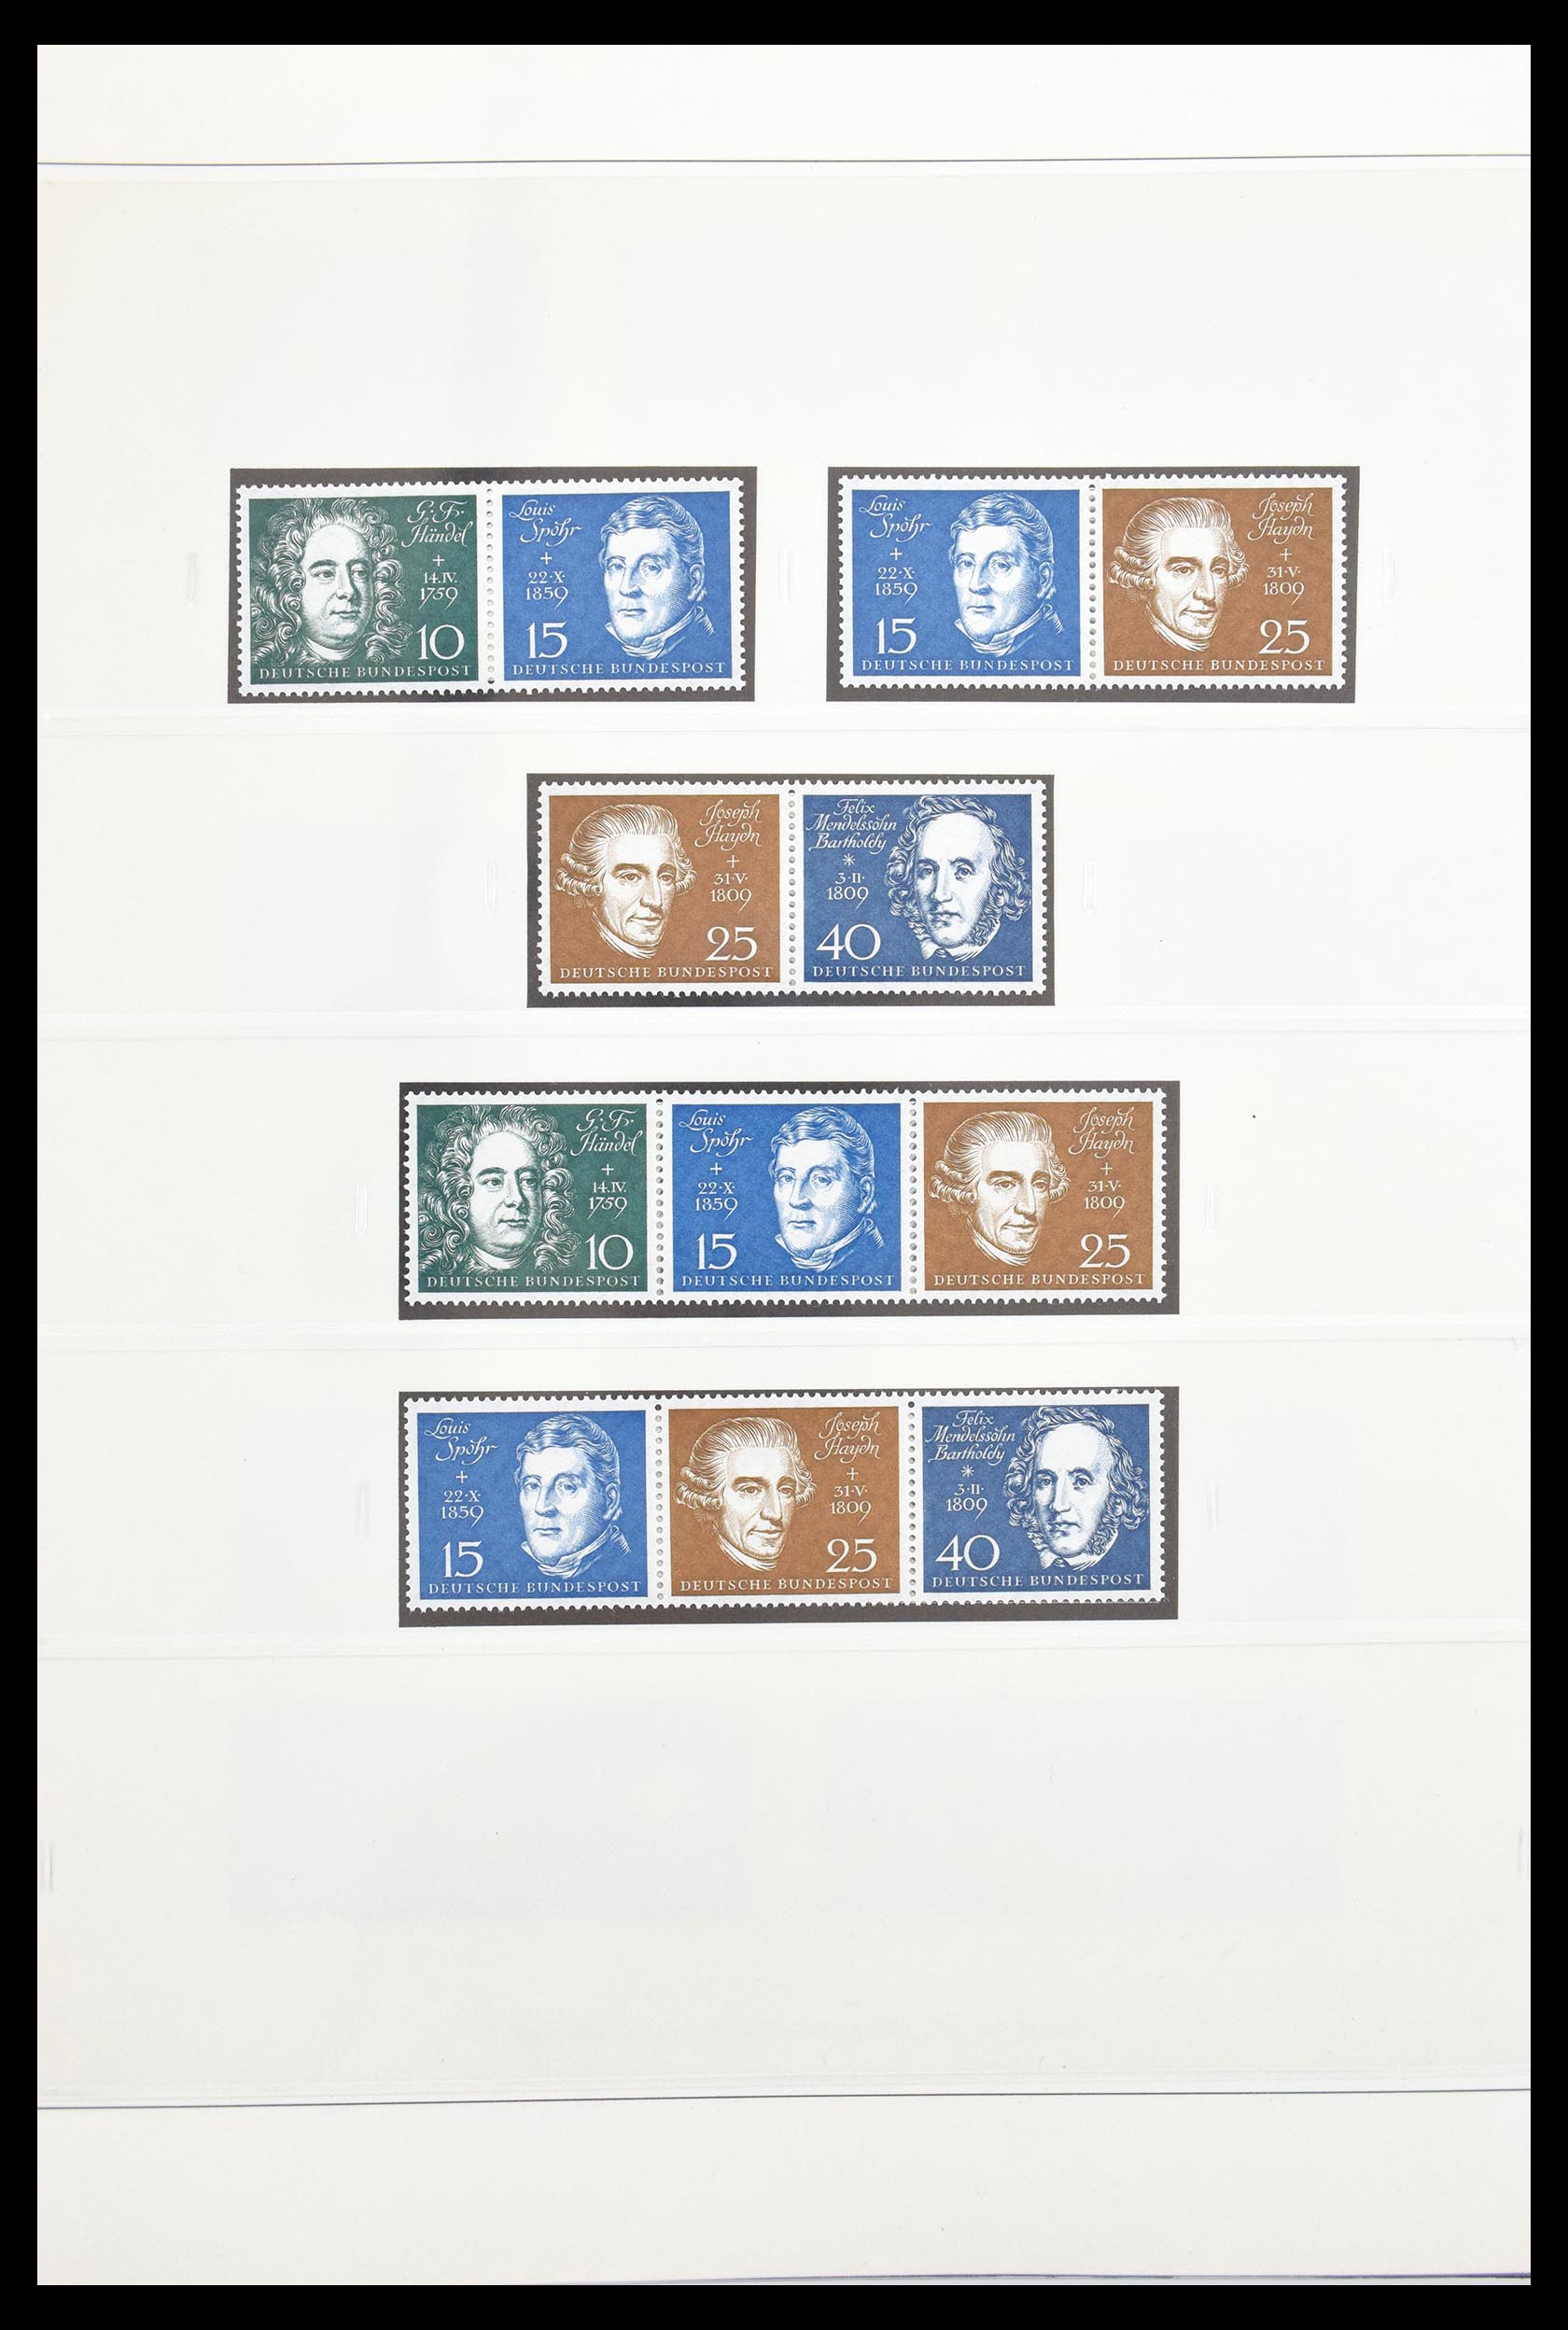 30605 012 - 30605 Bundespost combinations 1951-1974.